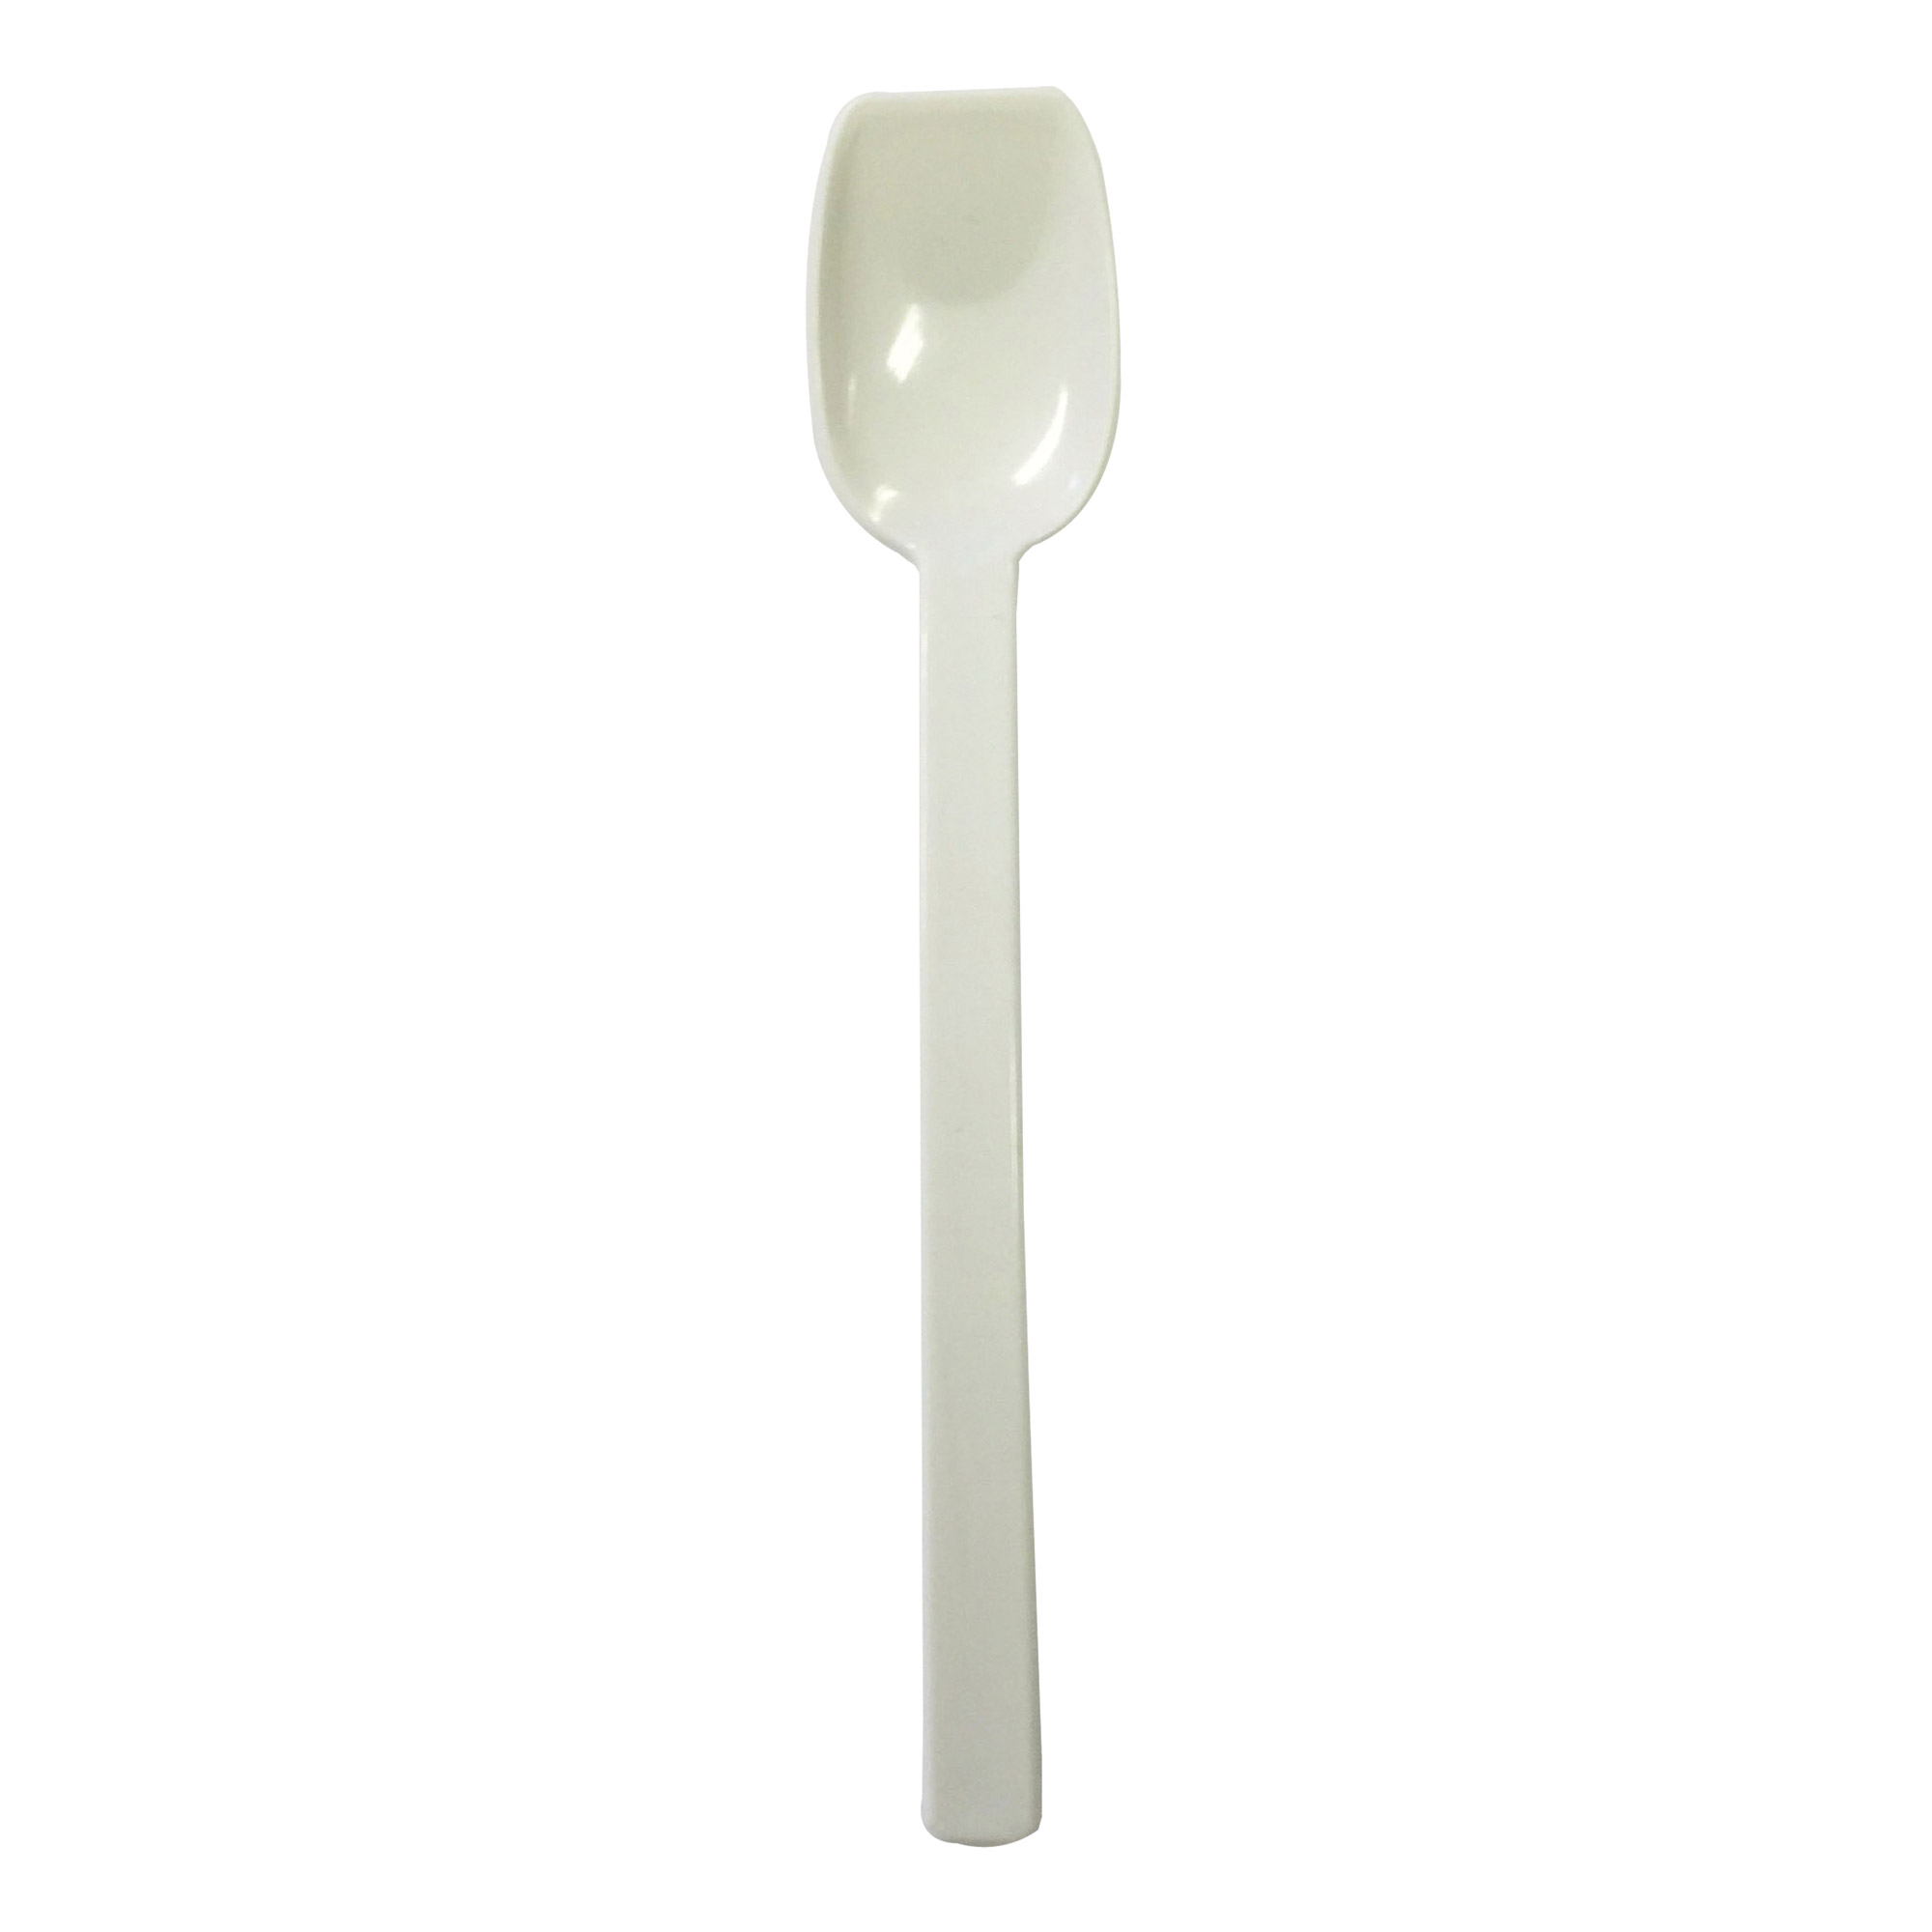 Flat Edge Polycarbonate Spoon (Narrow) WHITE - EACH